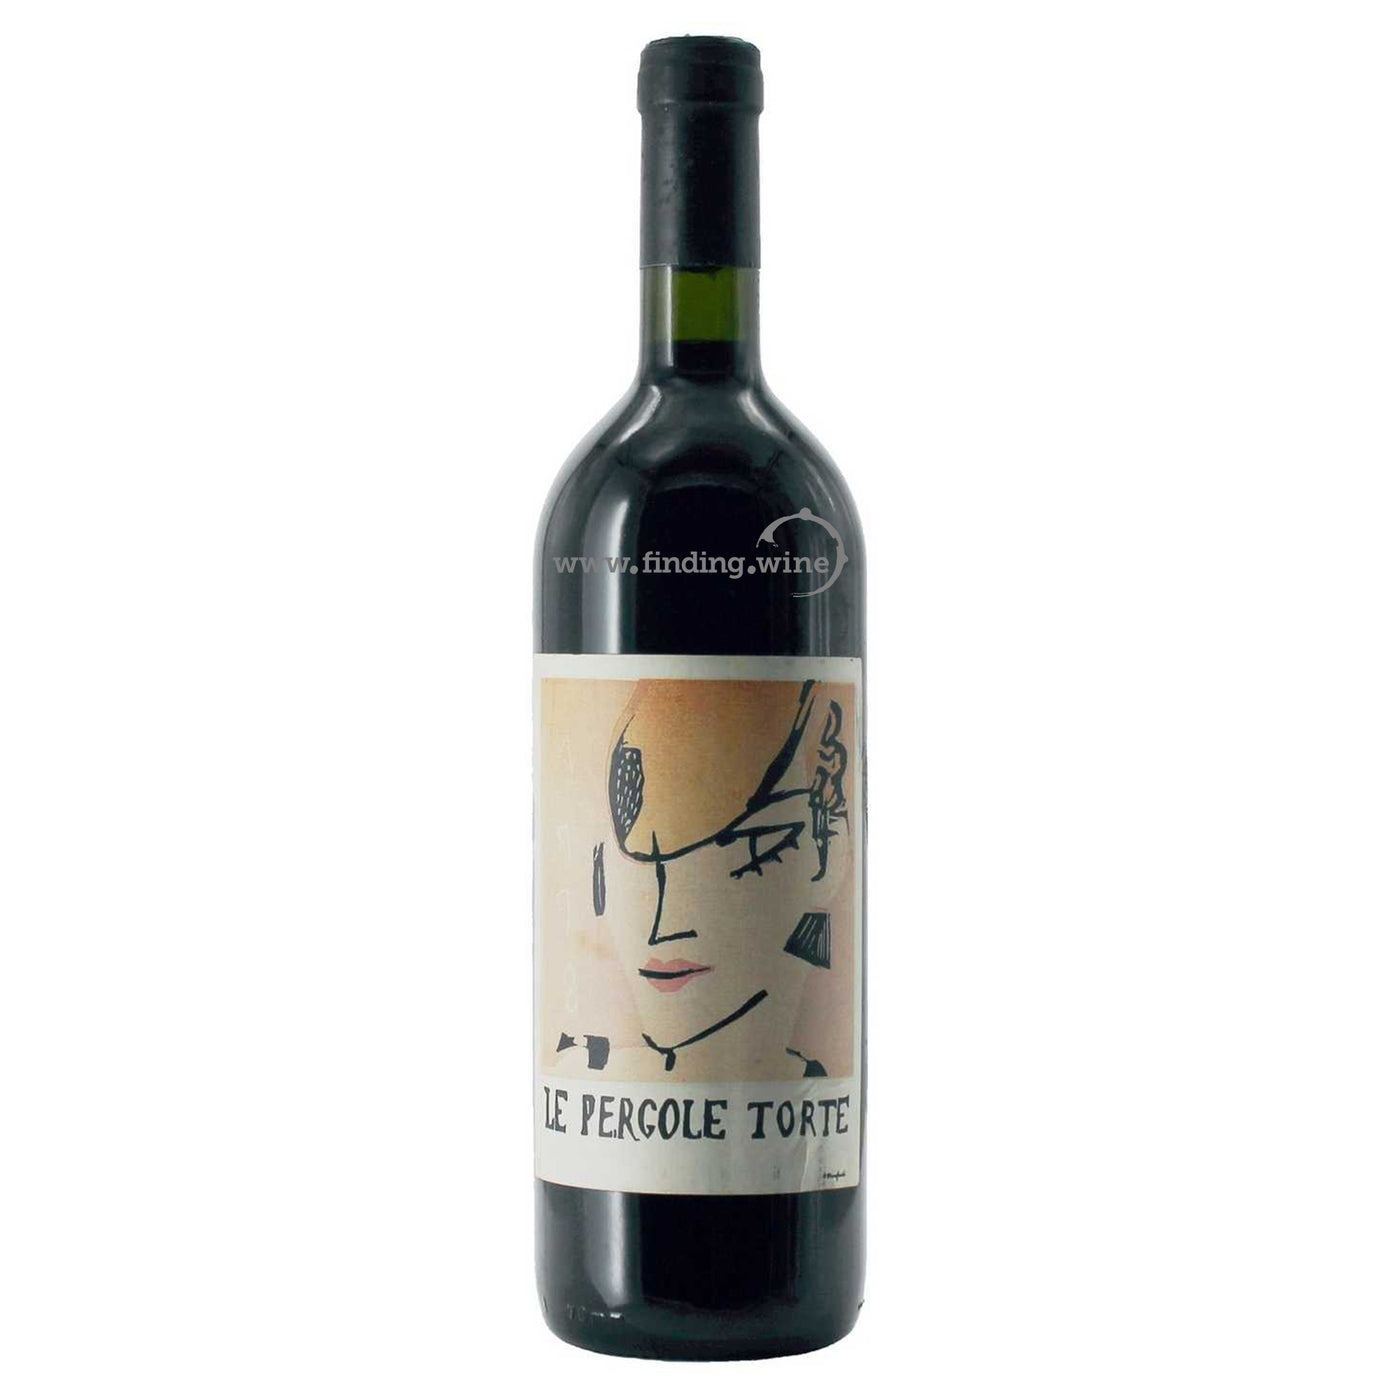 激レア ワイン 希少 イタリア 貴重ワイン レ ペルゴーレトルテ 1998